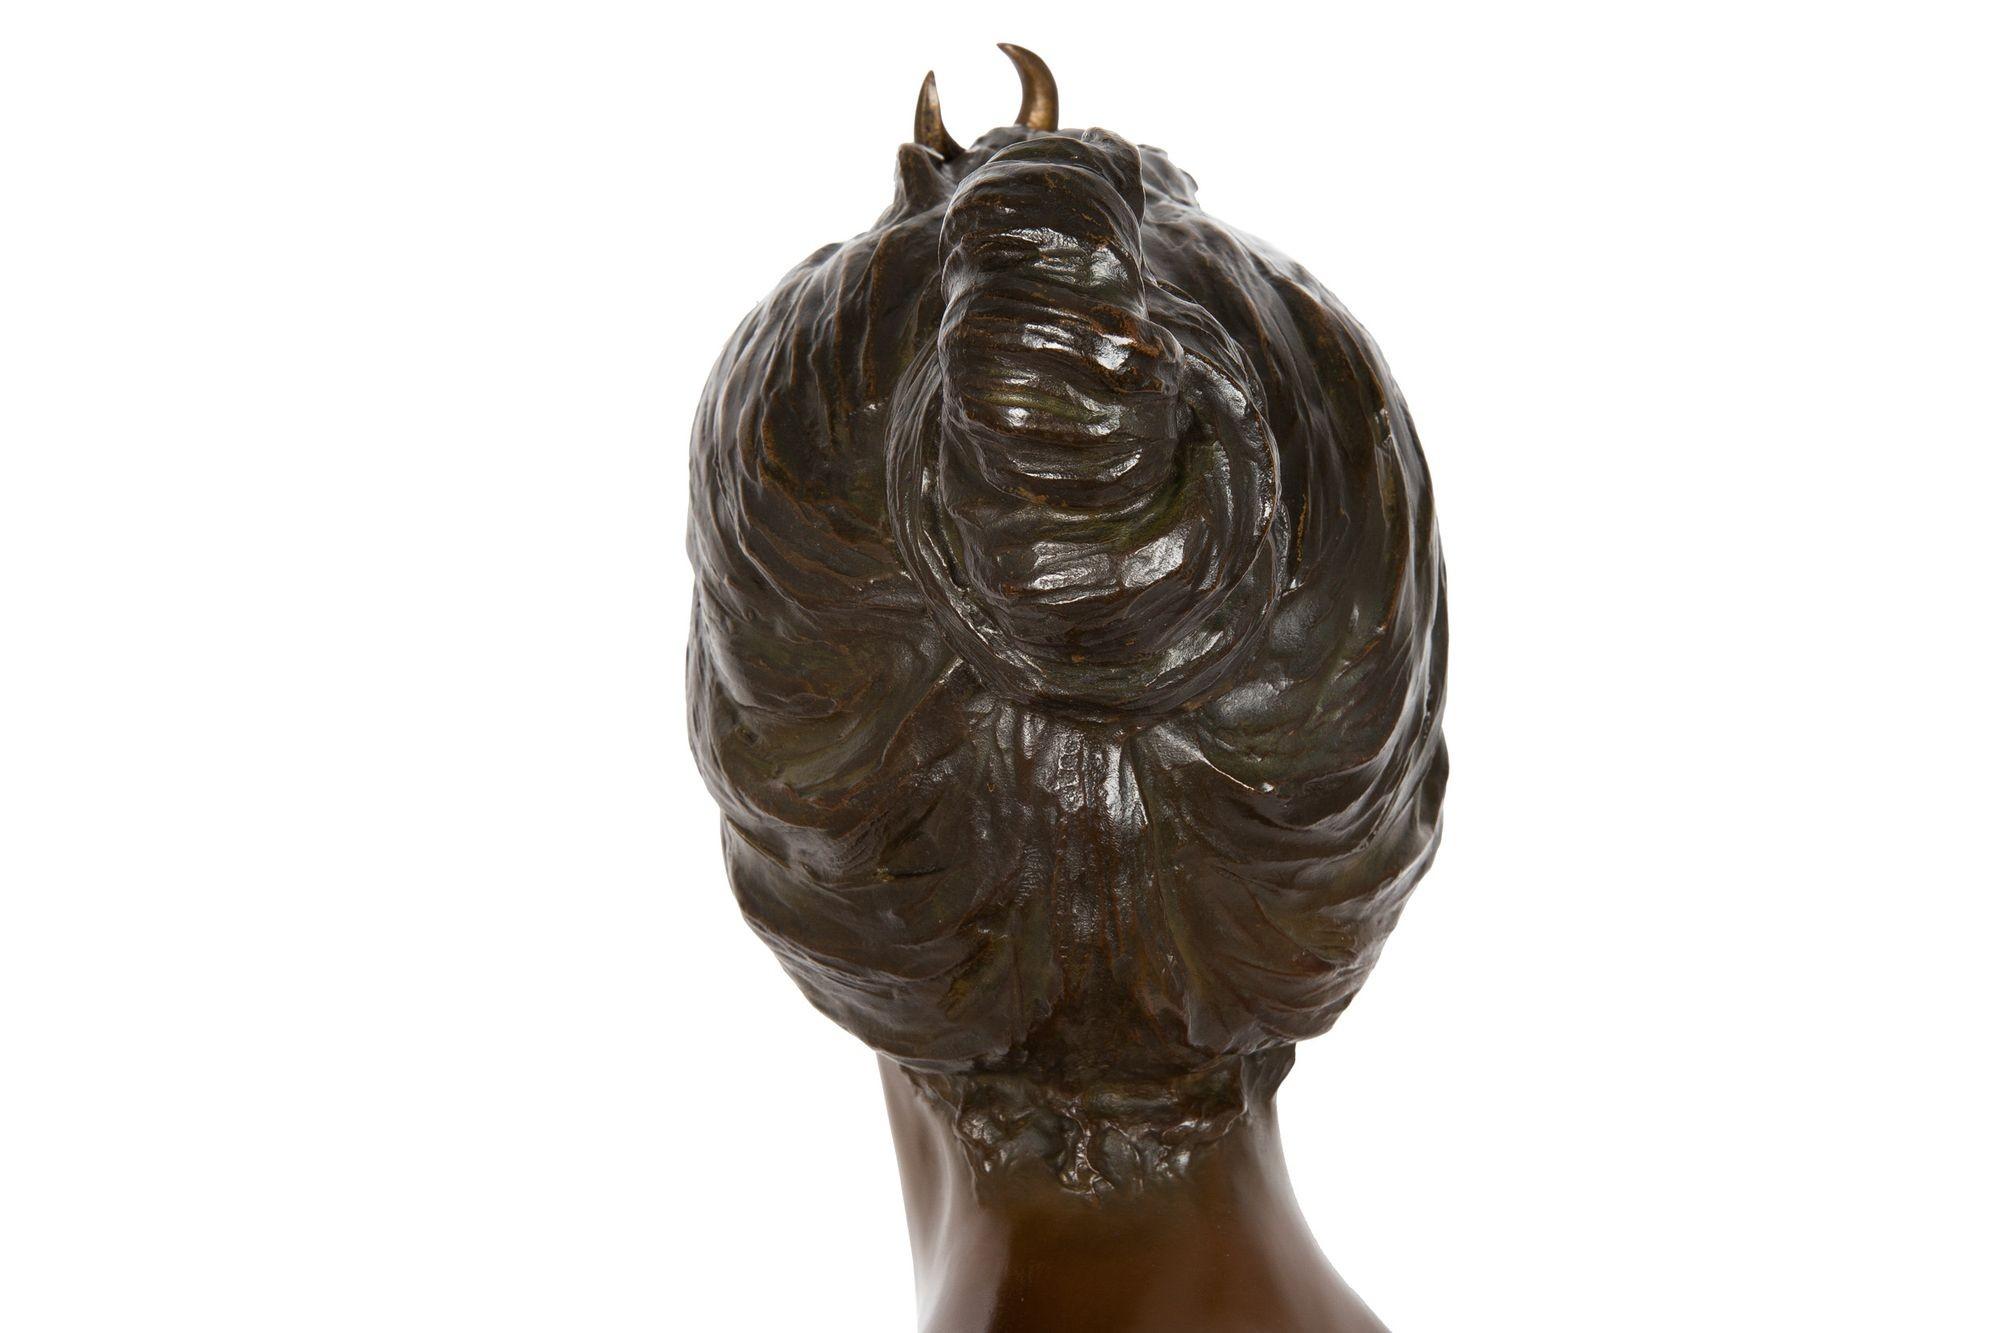 French Art Nouveau Bronze Sculpture “Bust of Diana” by Emmanuel Villanis For Sale 10